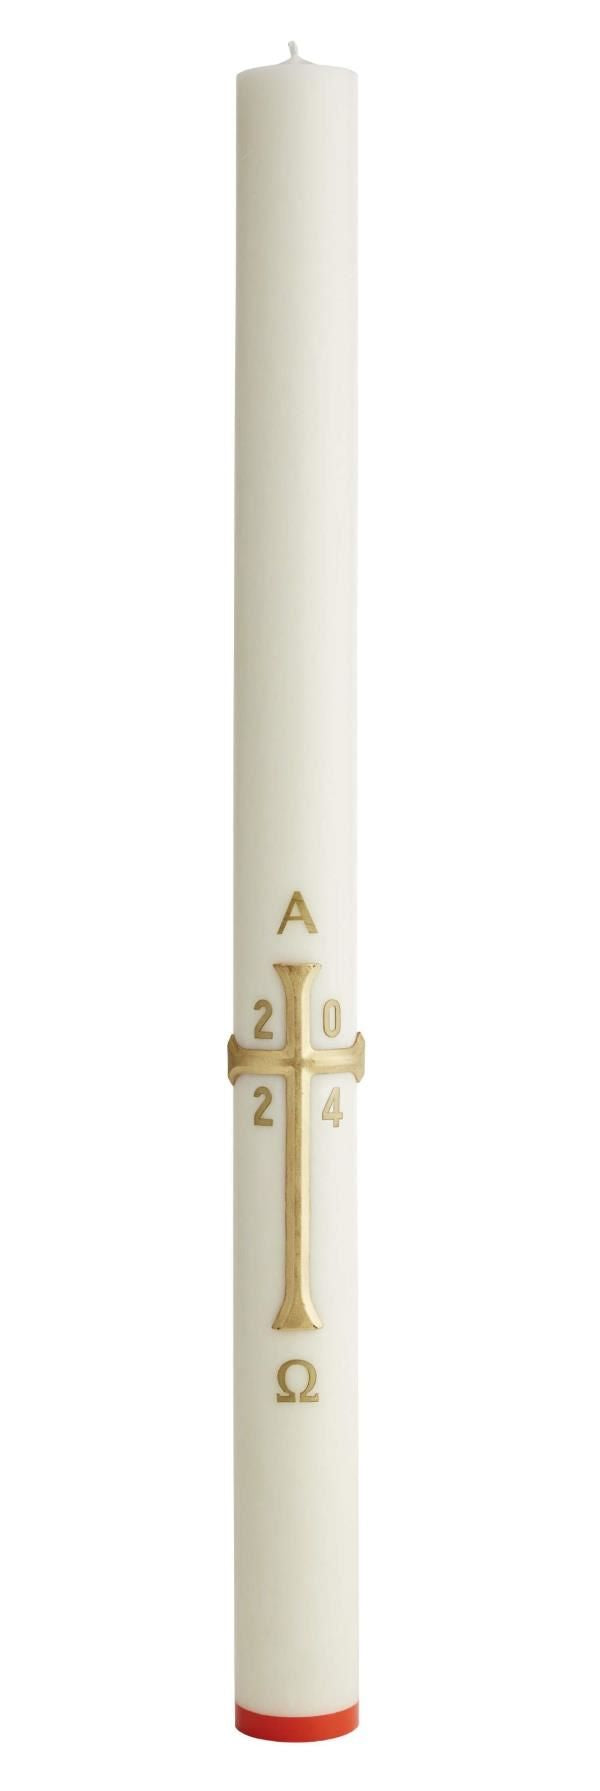 Cierge Pascal orné d'une Croix Crypte Décor en cire croix peinte à la main. Un diamètre 90mm et 3 hauteurs. Cire d'abeille ou cire classique. Ciergerie Desfossés